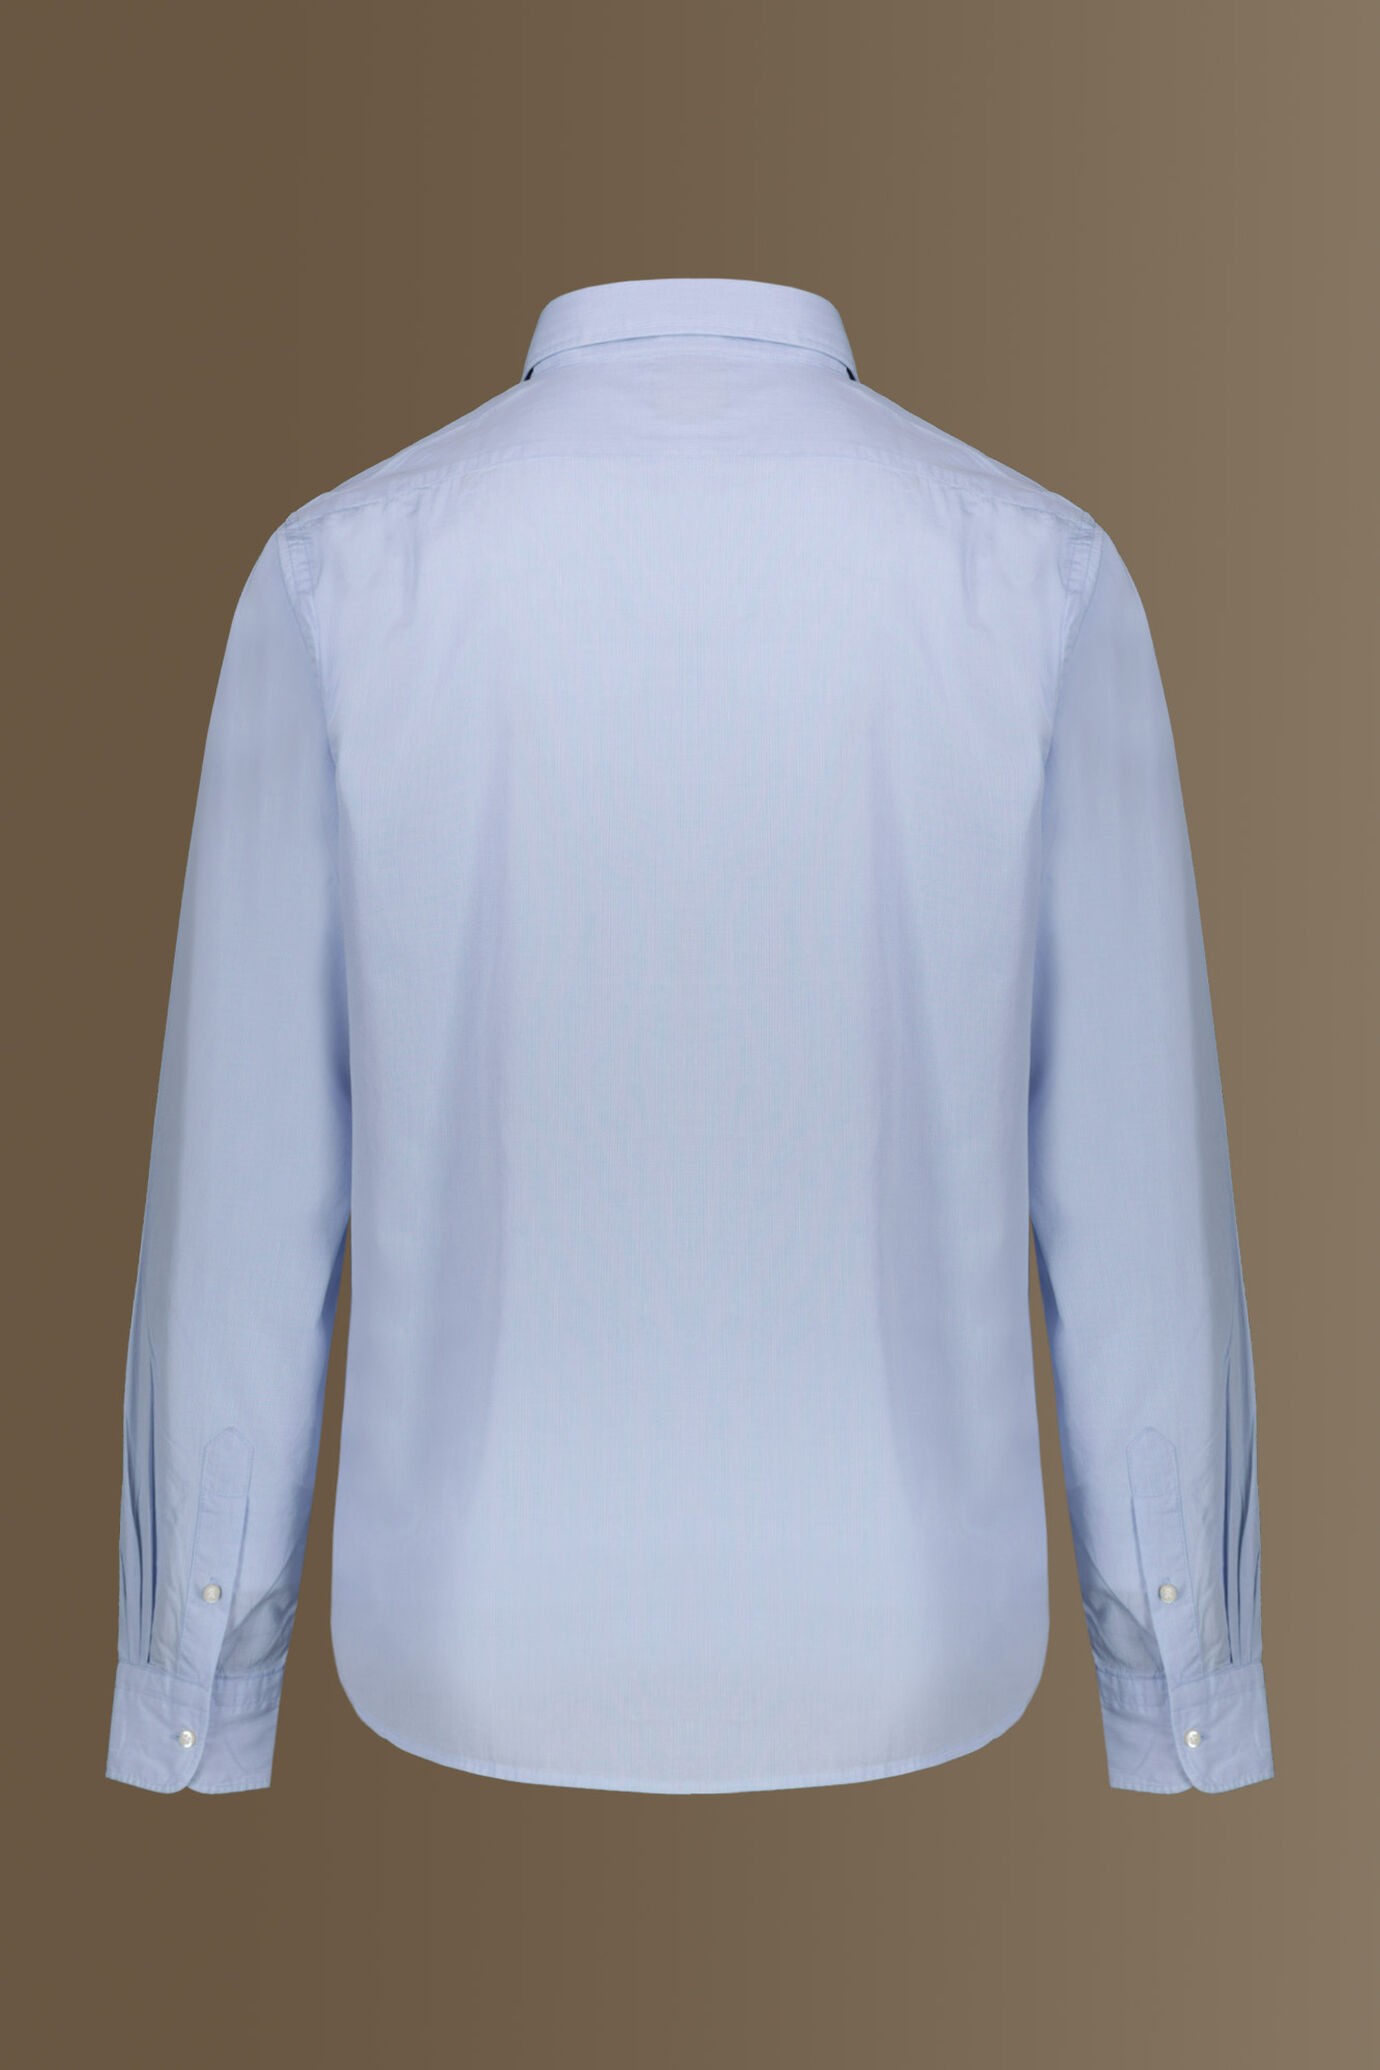 Camicia classica lavata 100% cotone collo francese tinto filo popeline microquadretti uomo image number 5